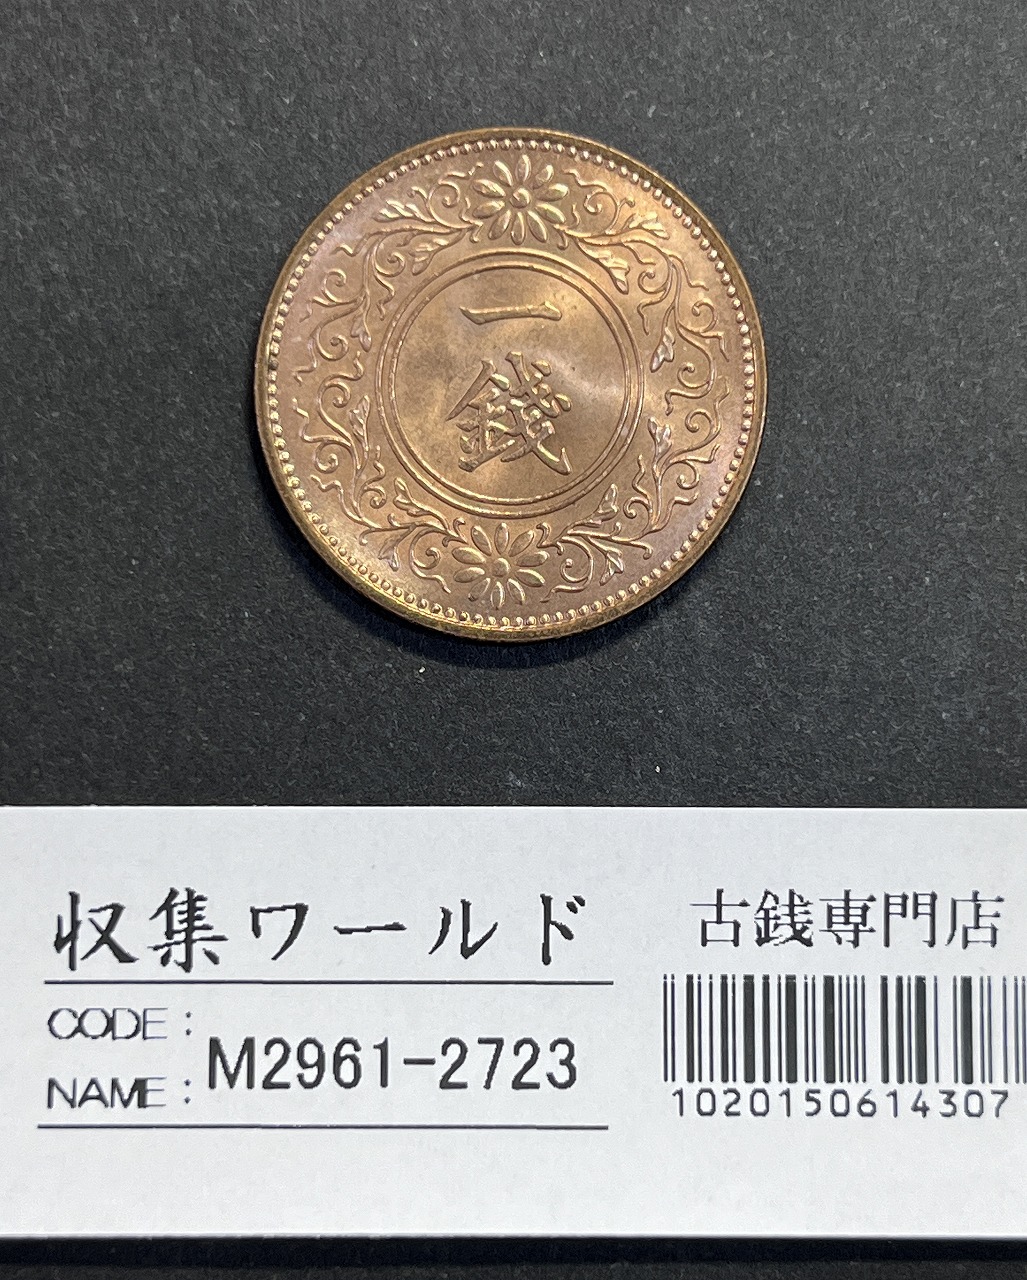 天皇陛下御在位二十年記念 1万円金貨プルーフ貨幣 2009平成21年 純金 